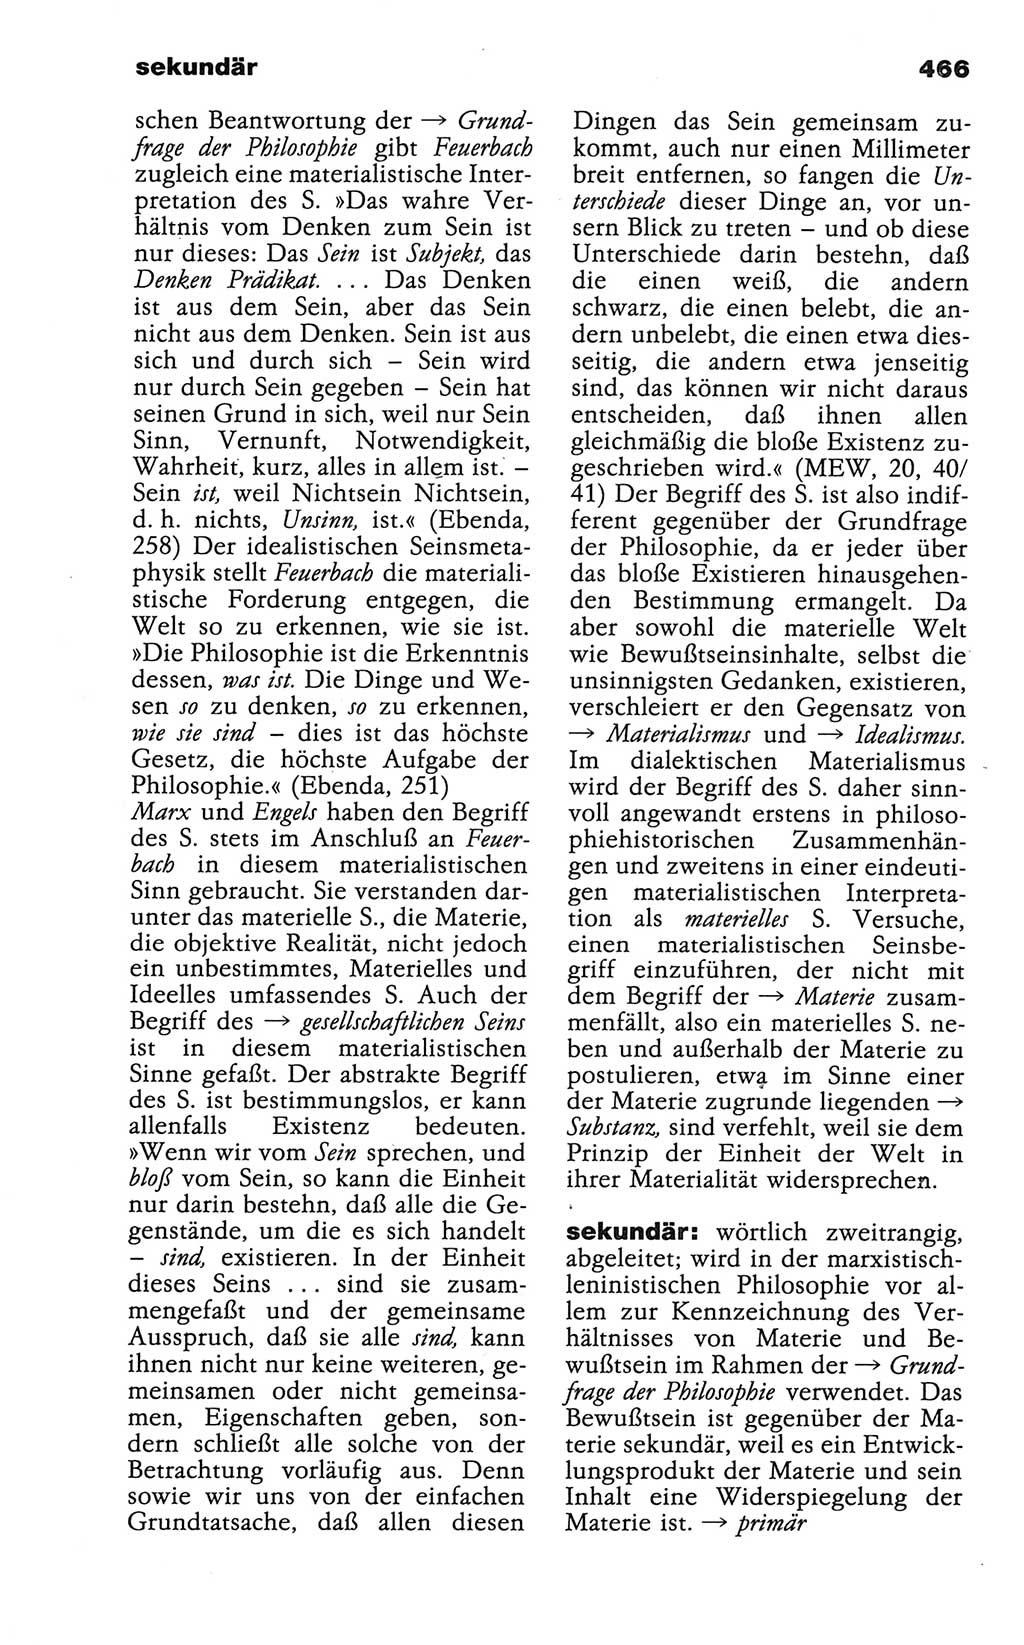 Wörterbuch der marxistisch-leninistischen Philosophie [Deutsche Demokratische Republik (DDR)] 1986, Seite 466 (Wb. ML Phil. DDR 1986, S. 466)